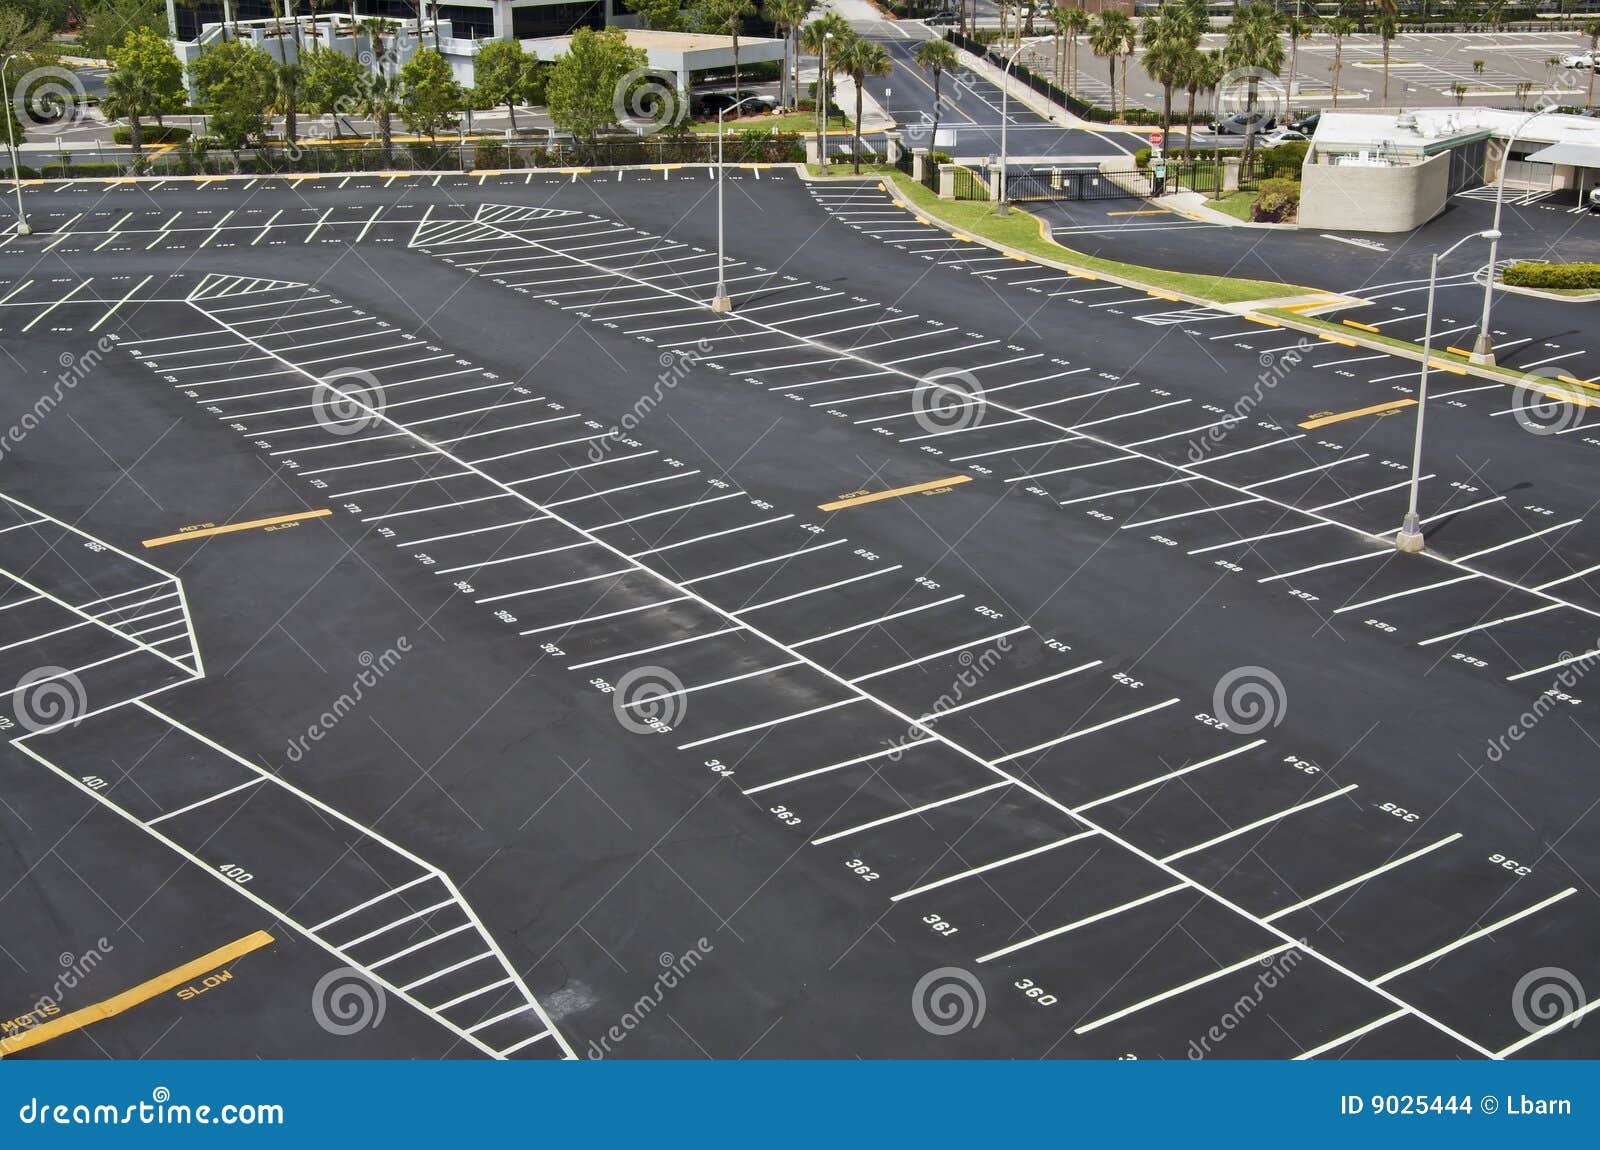 large parking lot